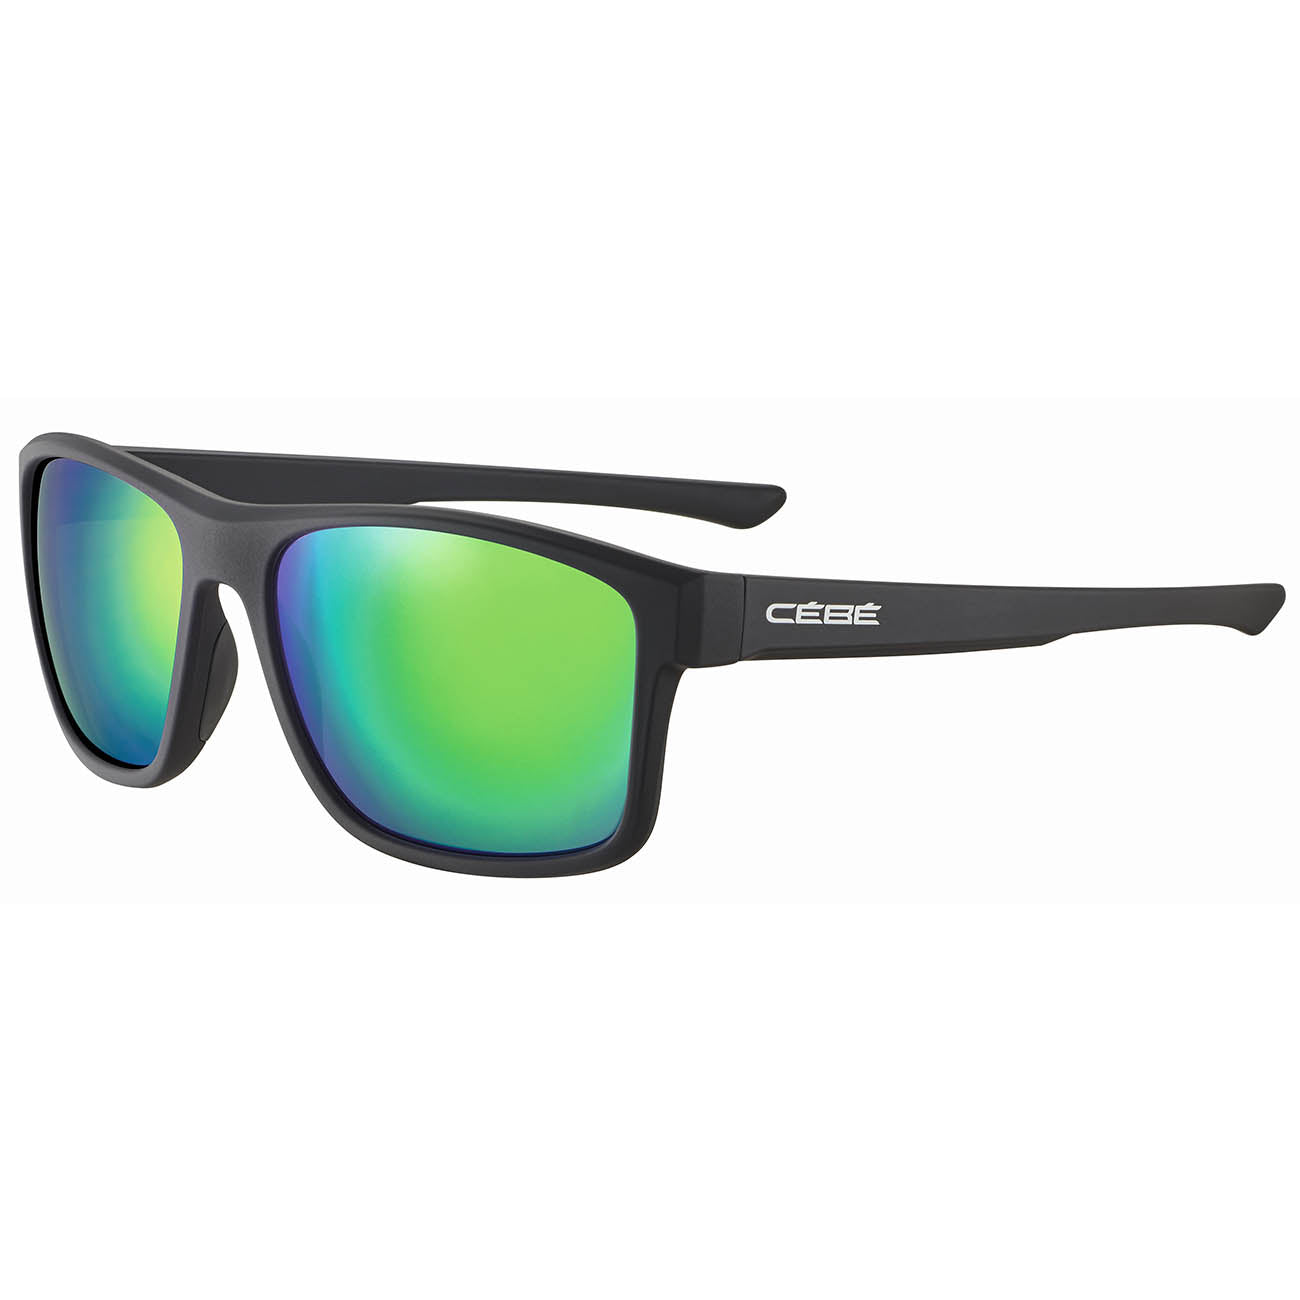 Cebe PROGUIDE CBS034 Sunglasses